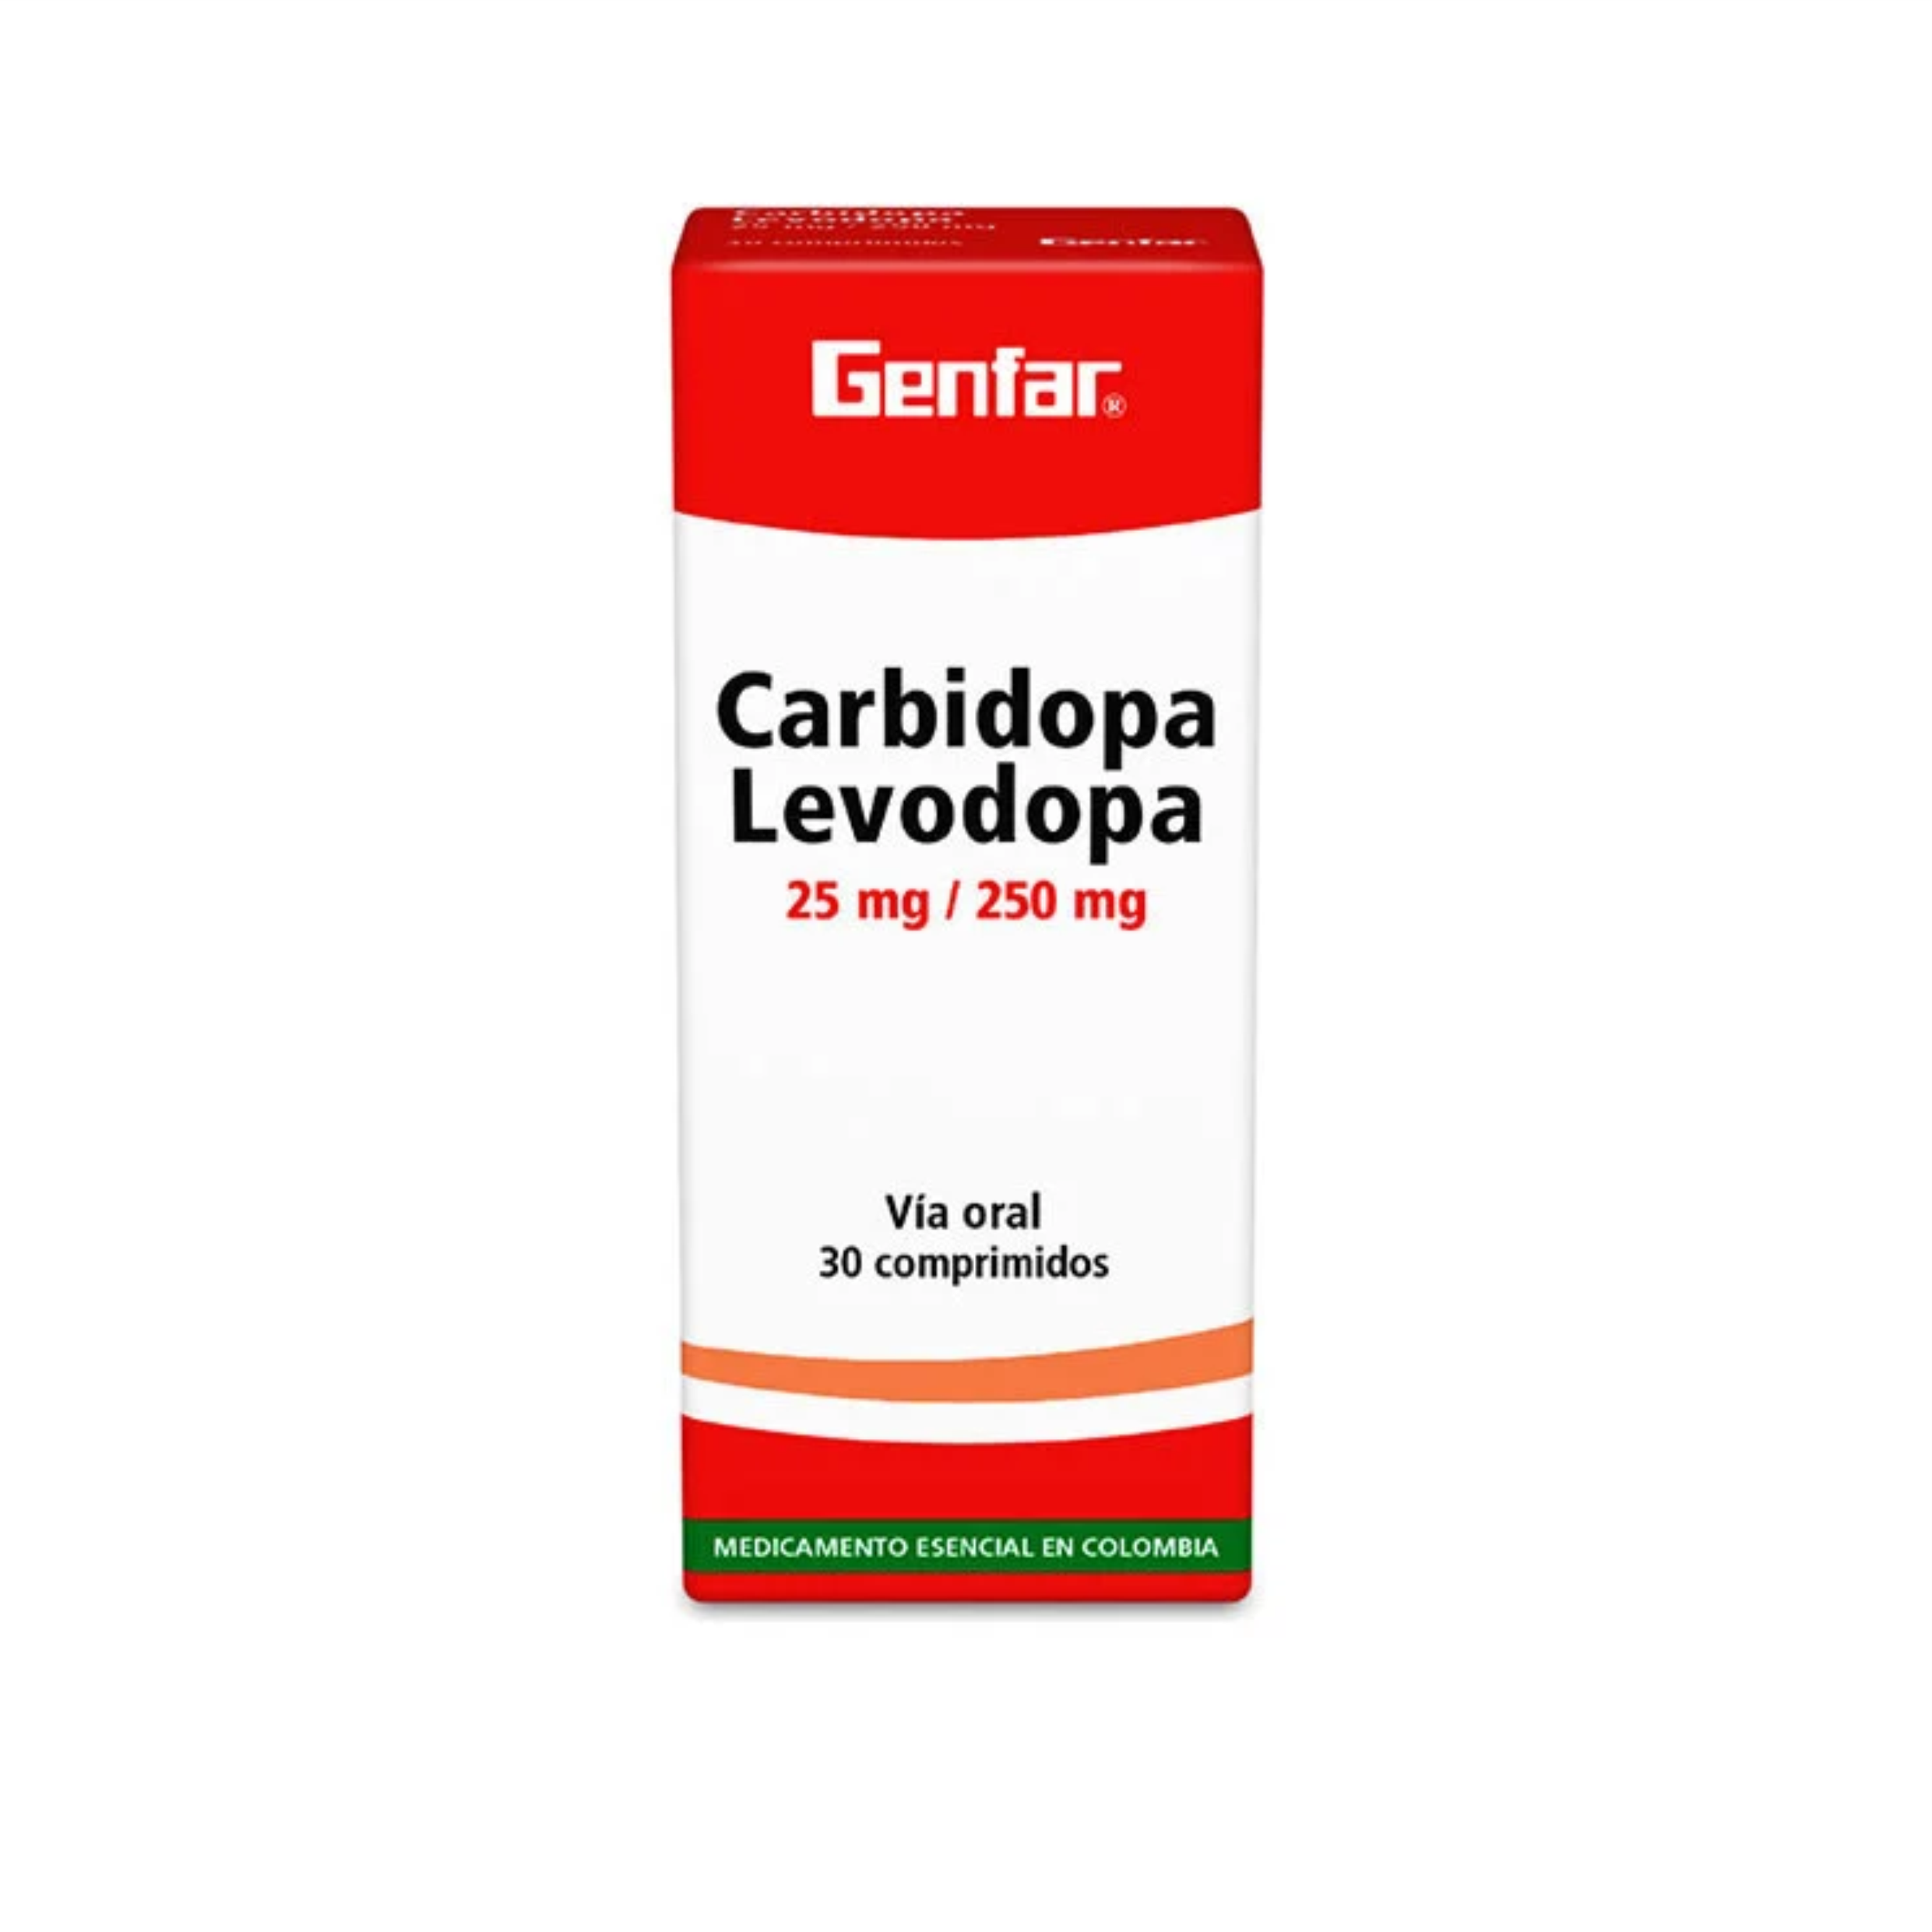 Carbidopa Levodopa 25mg/250mg via oral 30 comprimidos